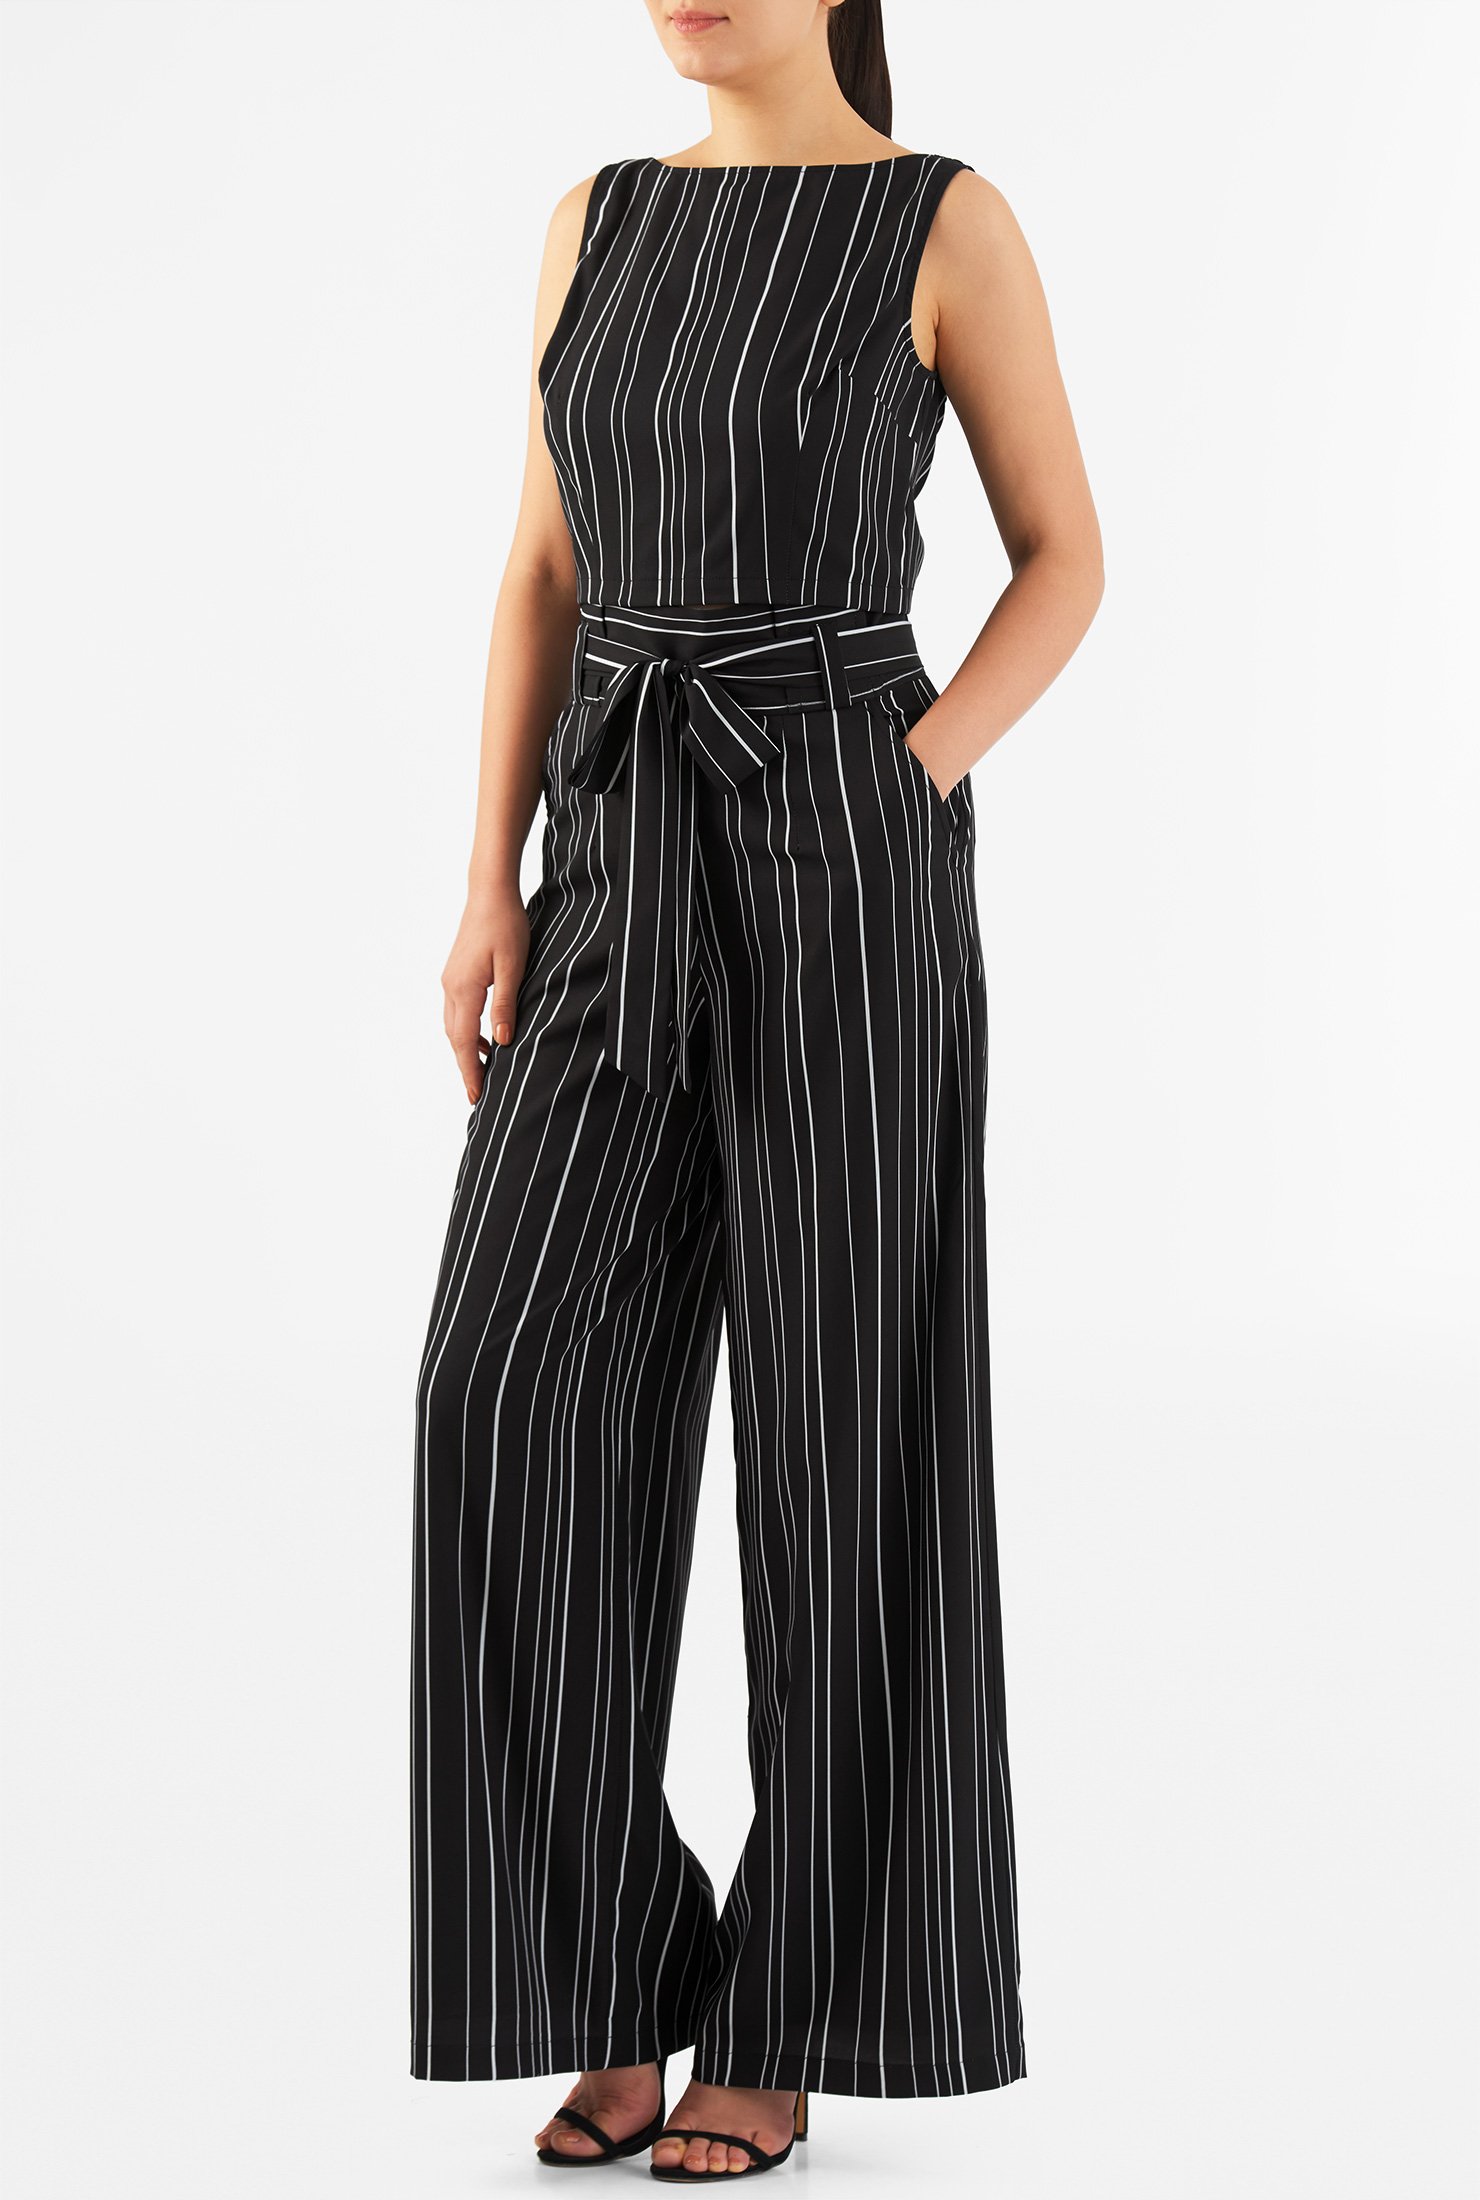 Shop Stripe print crepe tank top and wide-leg pants | eShakti